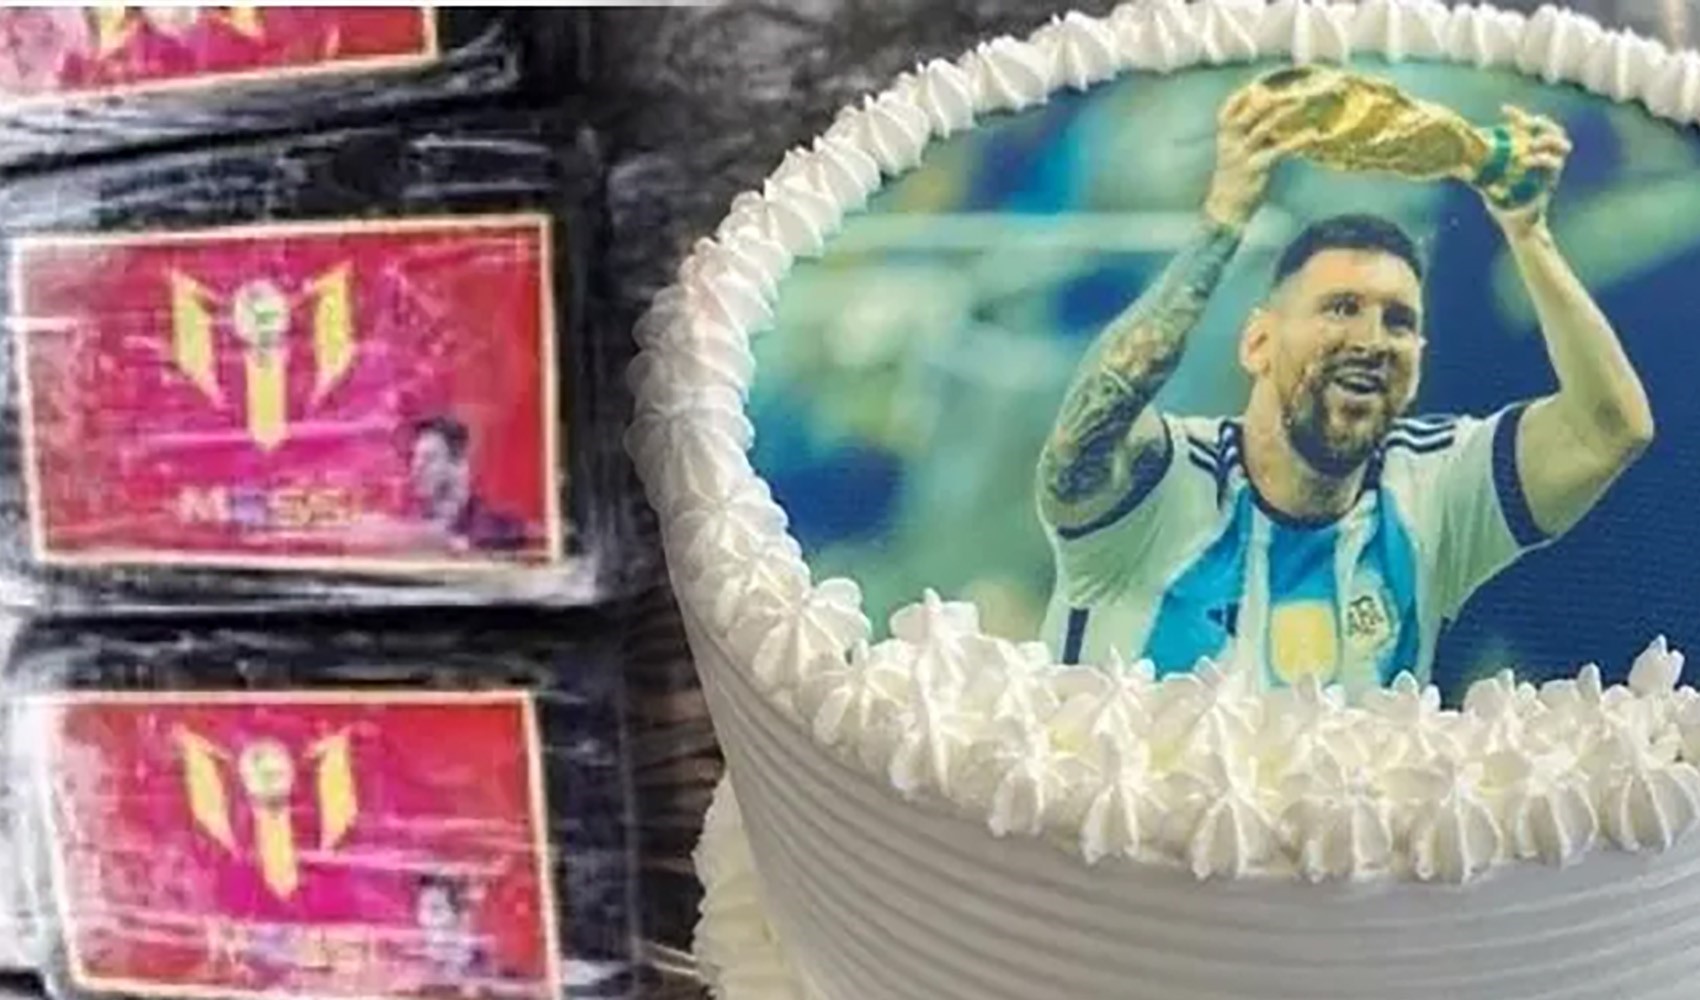 Güney Amerika’dan kokain sevkiyatı: Uyuşturucu paketlerine Messi fotoğrafı yapıştırmışlar